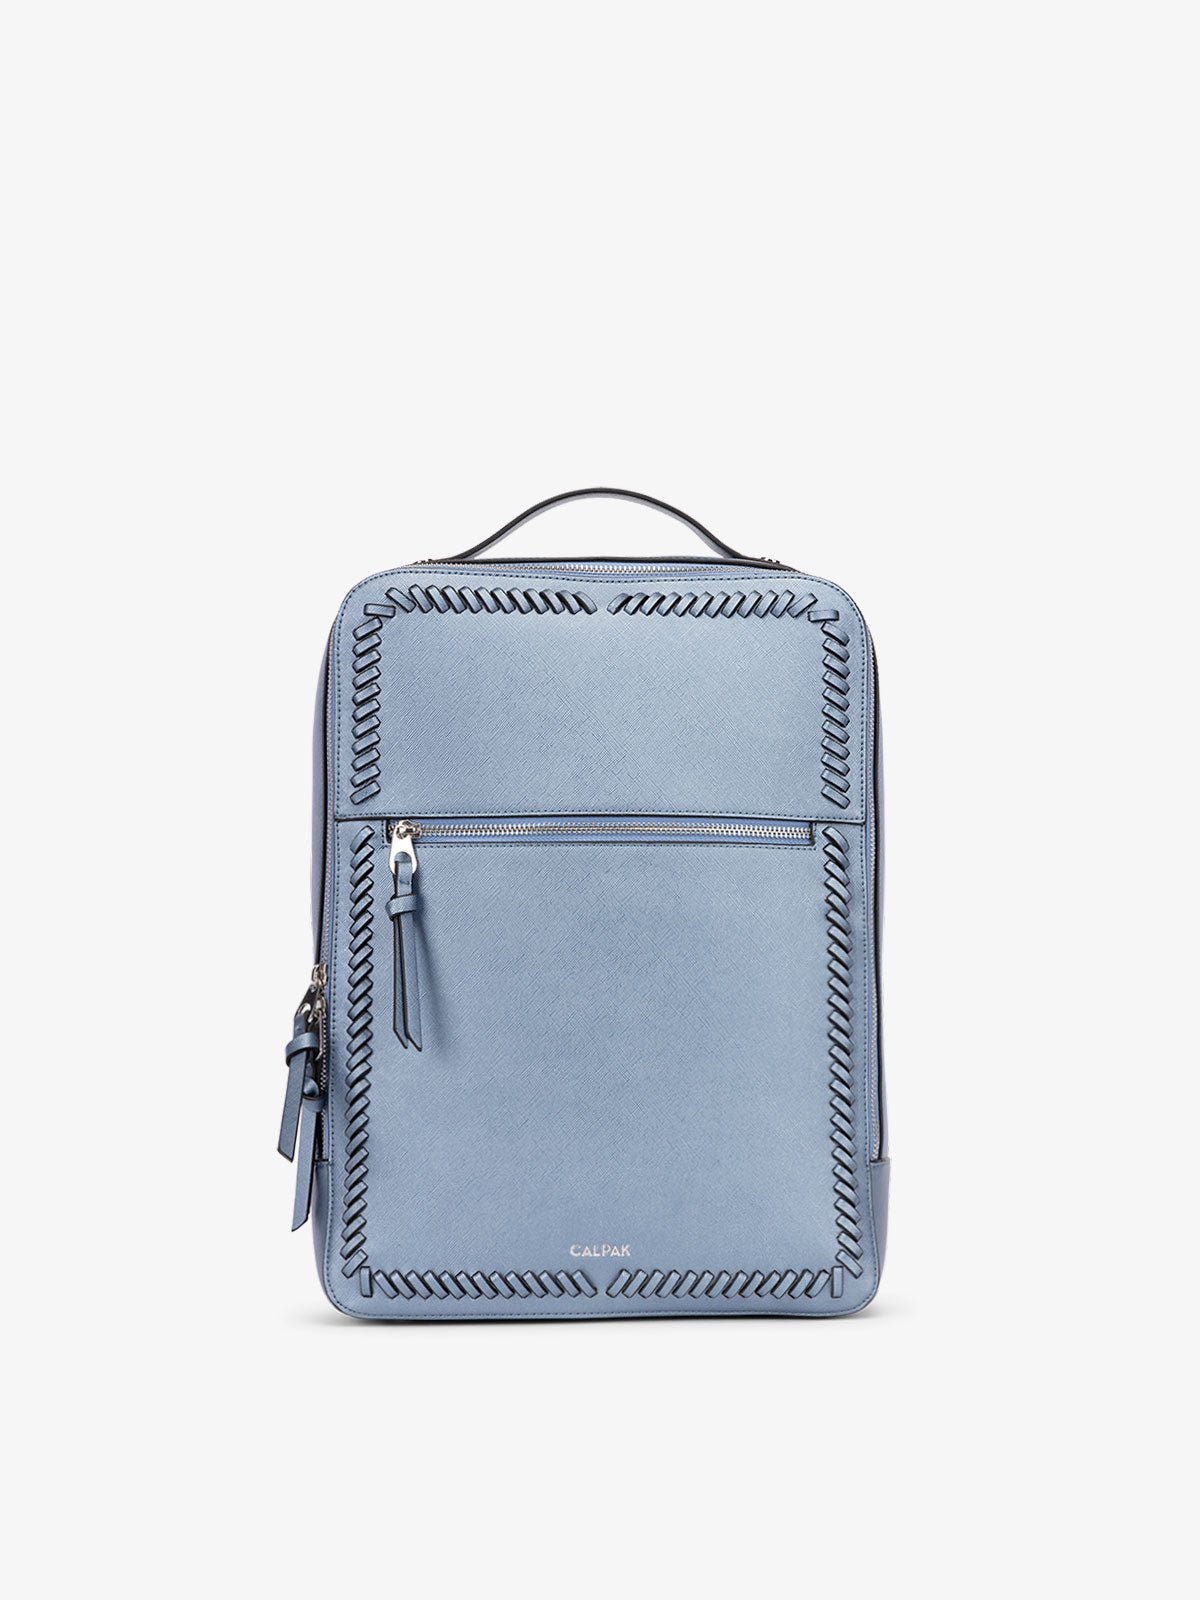 CALPAK Kaya Laptop Backpack for women in light blue stargaze